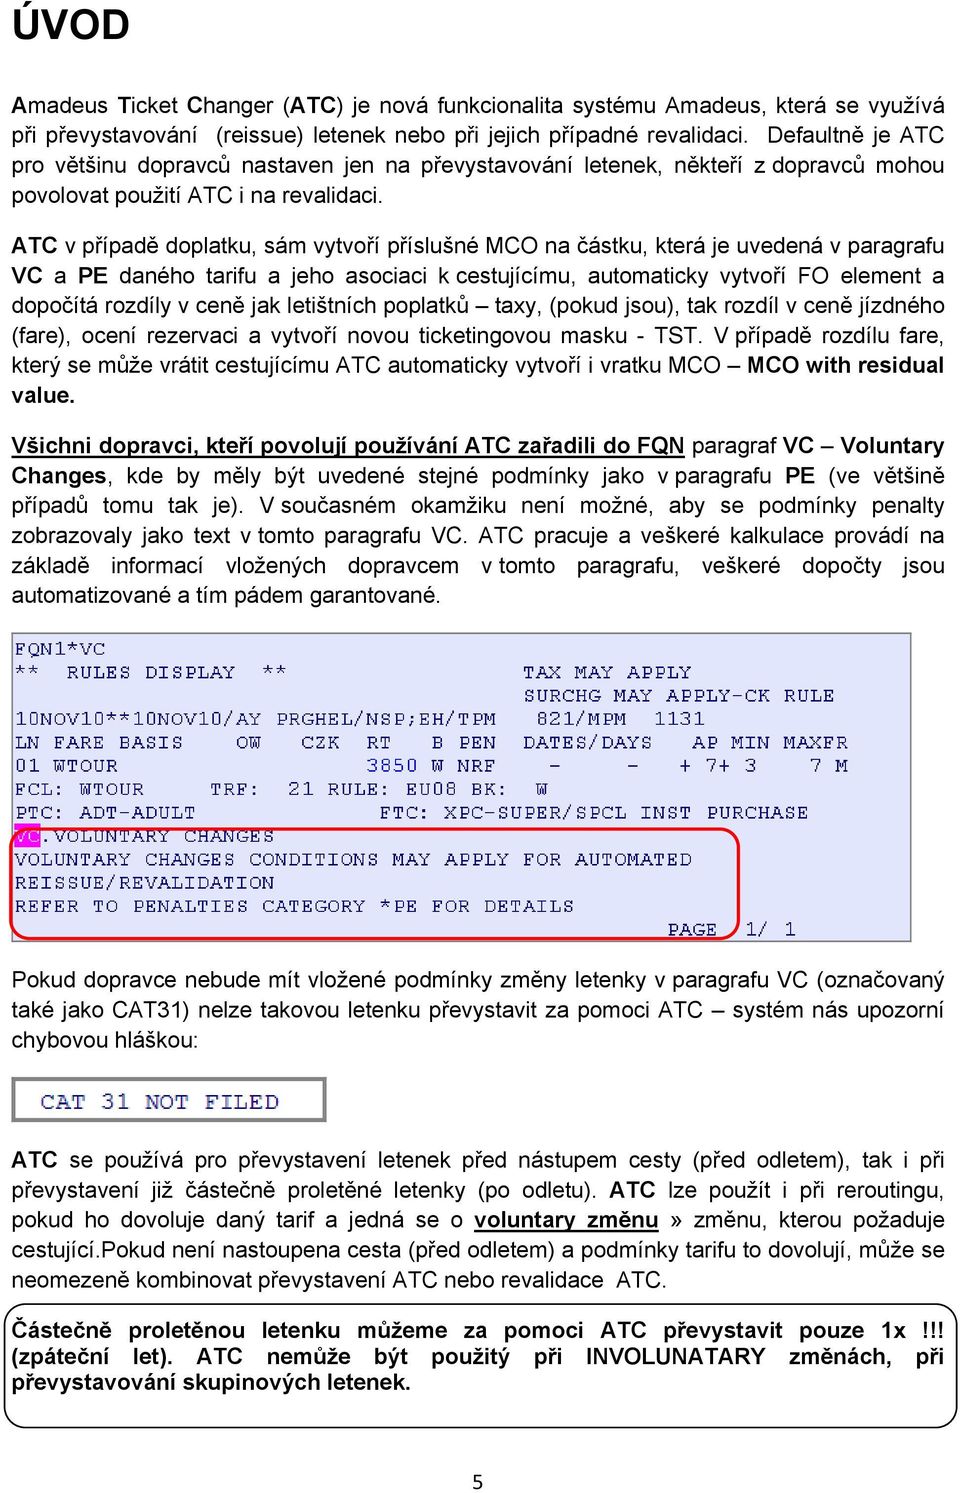 ATC v případě doplatku, sám vytvoří příslušné MCO na částku, která je uvedená v paragrafu VC a PE daného tarifu a jeho asociaci k cestujícímu, automaticky vytvoří FO element a dopočítá rozdíly v ceně